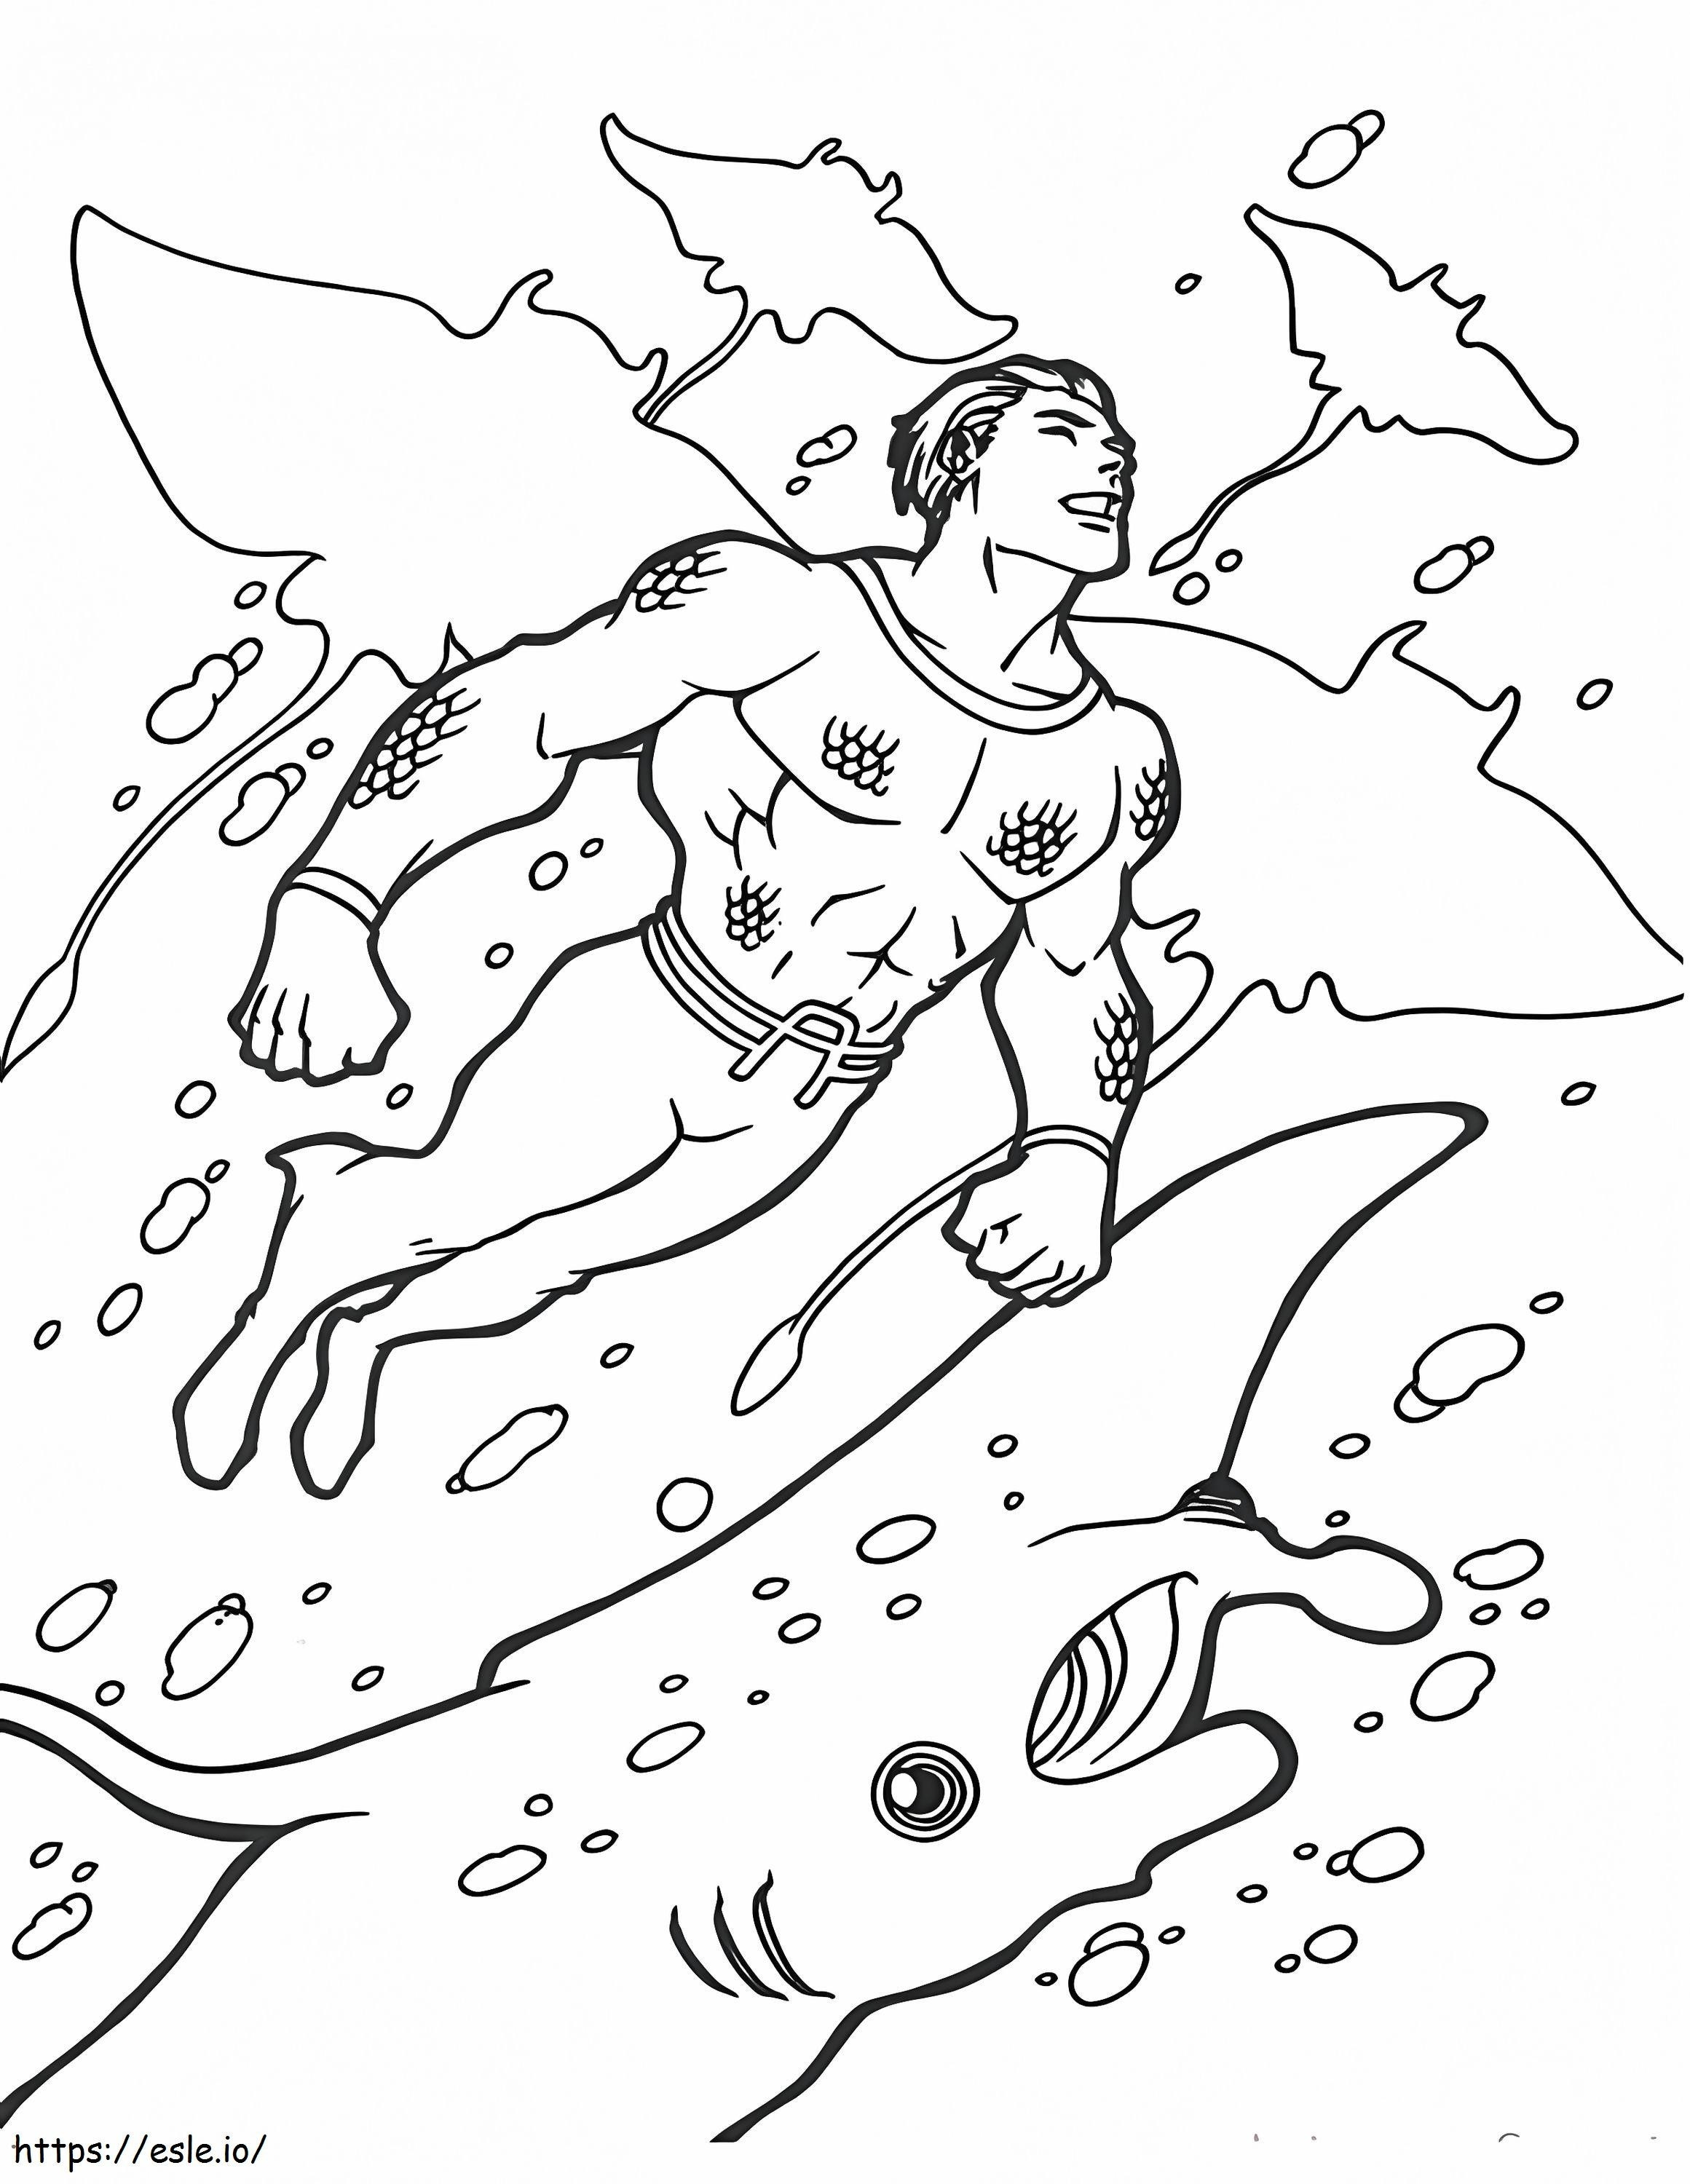 Aquaman 5 ausmalbilder